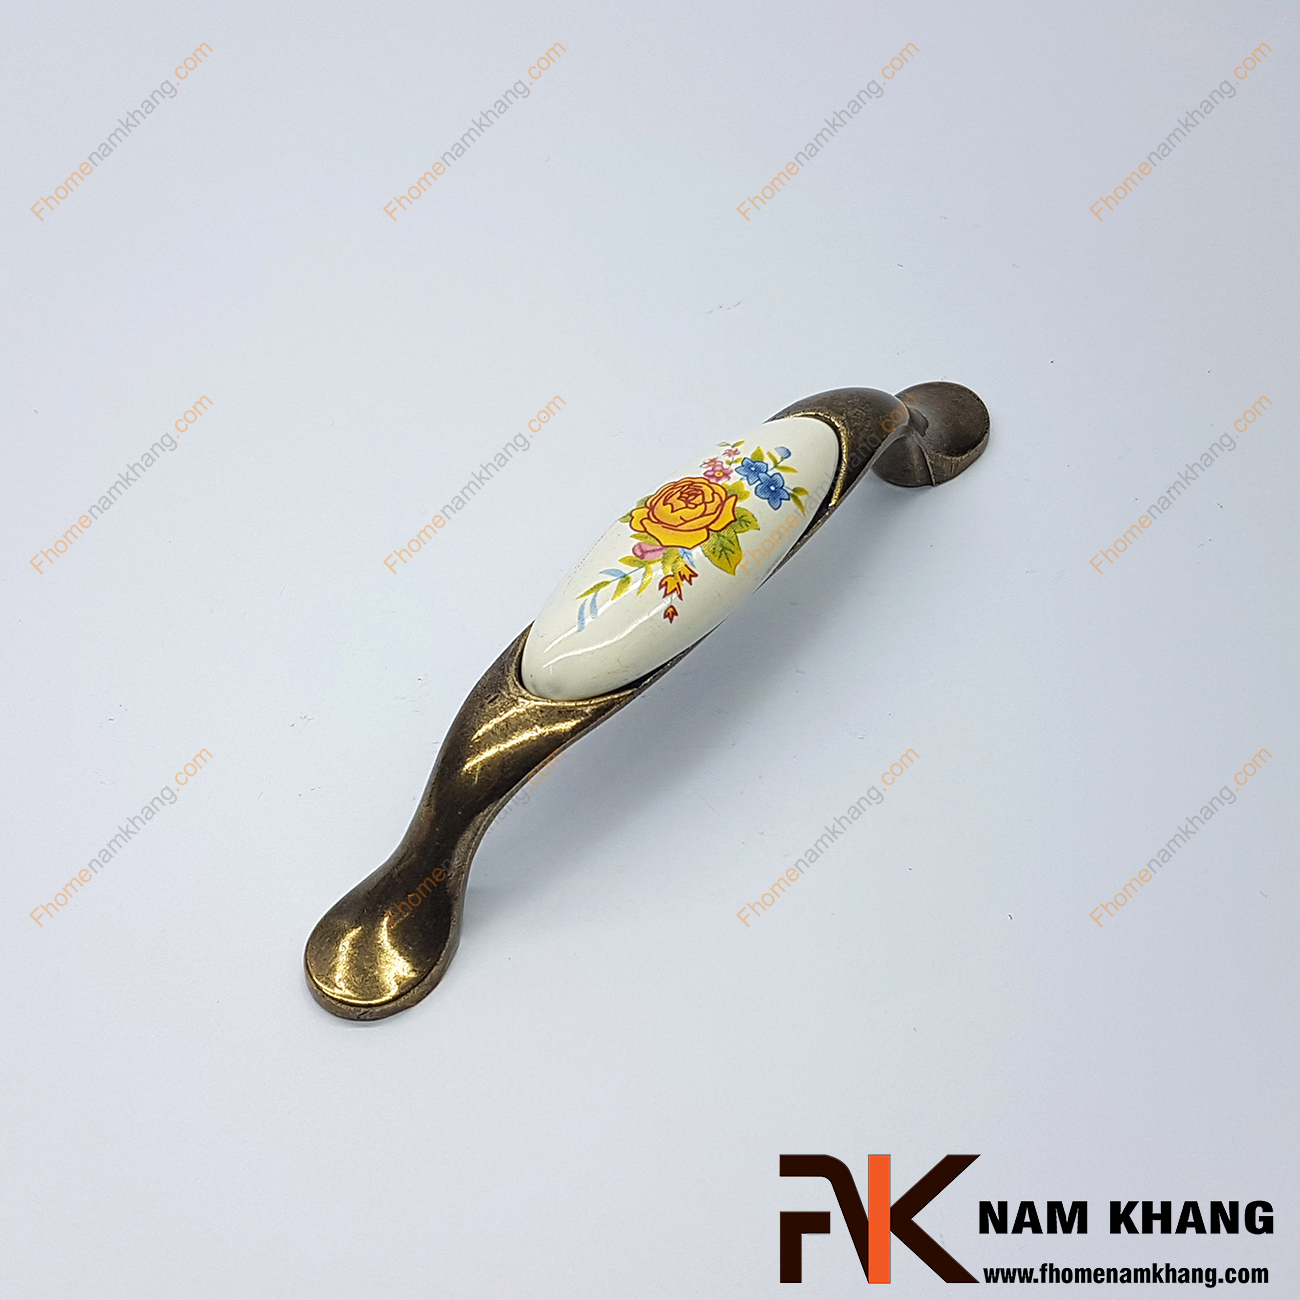 Sản phẩm Tay nắm tủ cổ điển phối sứ hoa NK360-96HV thuộc dạng tay nắm kết hợp từ 2 chất liệu quen thuộc là hợp kim mạ đồng cổ và sứ cao cấp